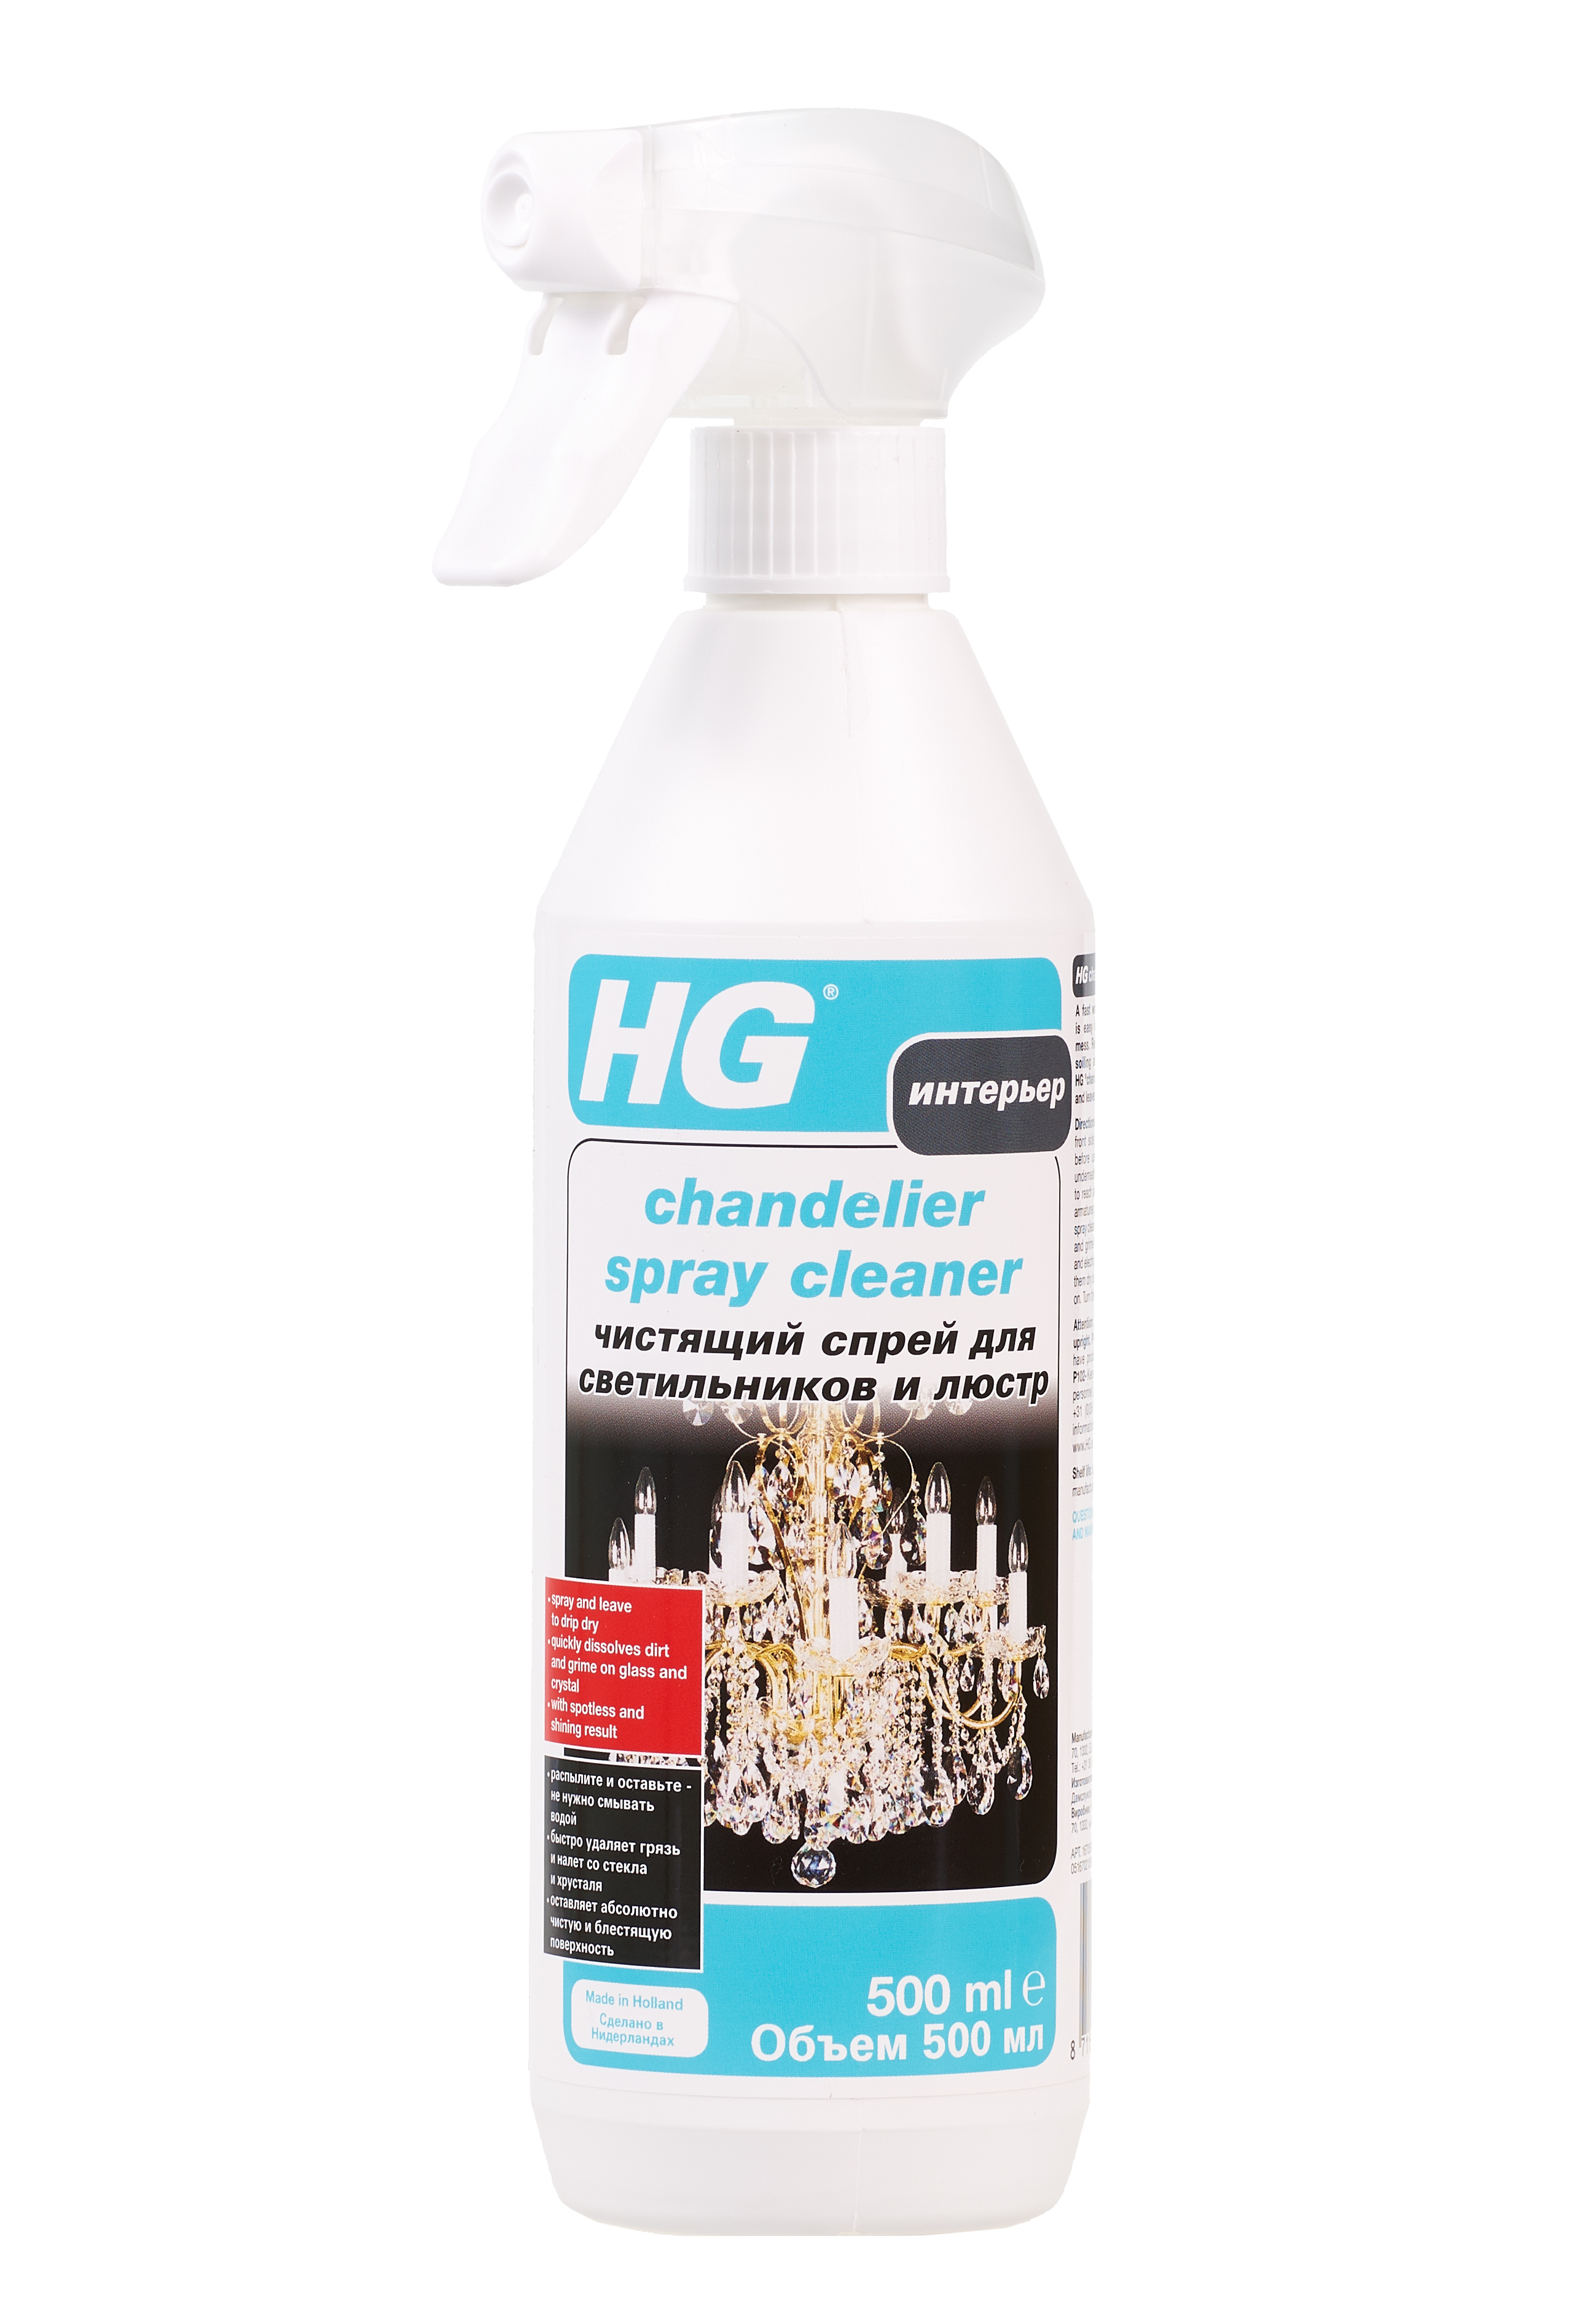 HG чистящий спрей для светильников и люстр 0.5л HG 167050161